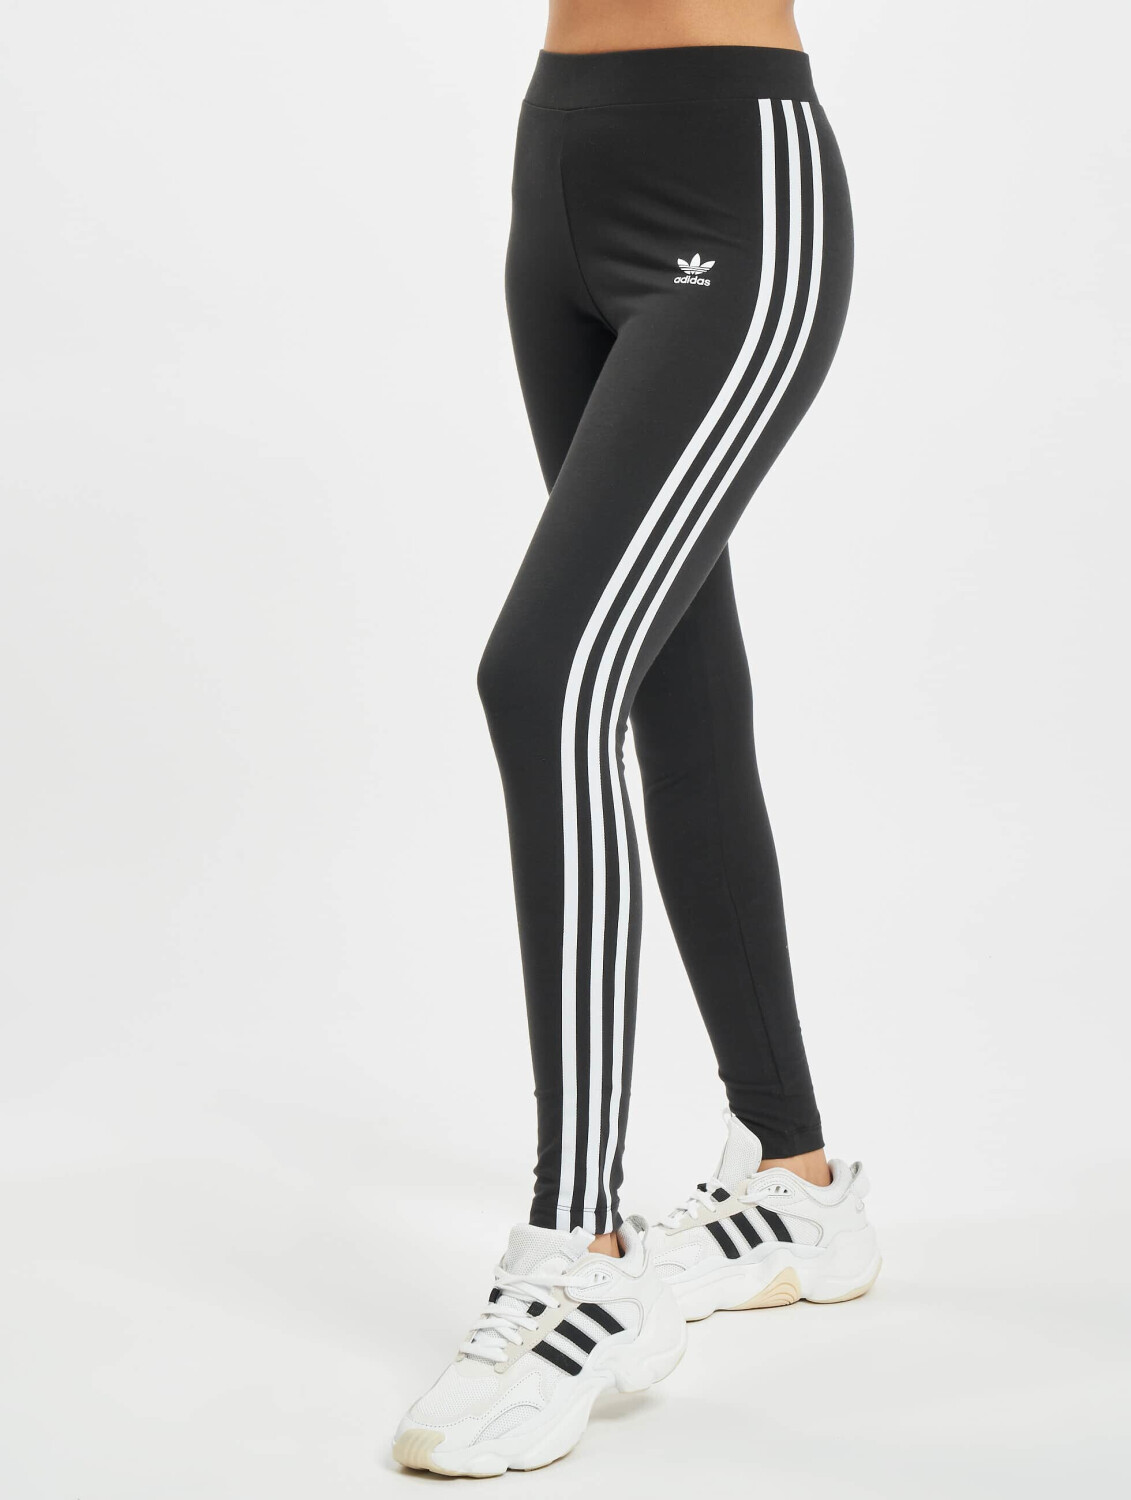 Adidas Adicolor Classics 3-Stripes 22,46 ab Leggings € Preisvergleich black bei 